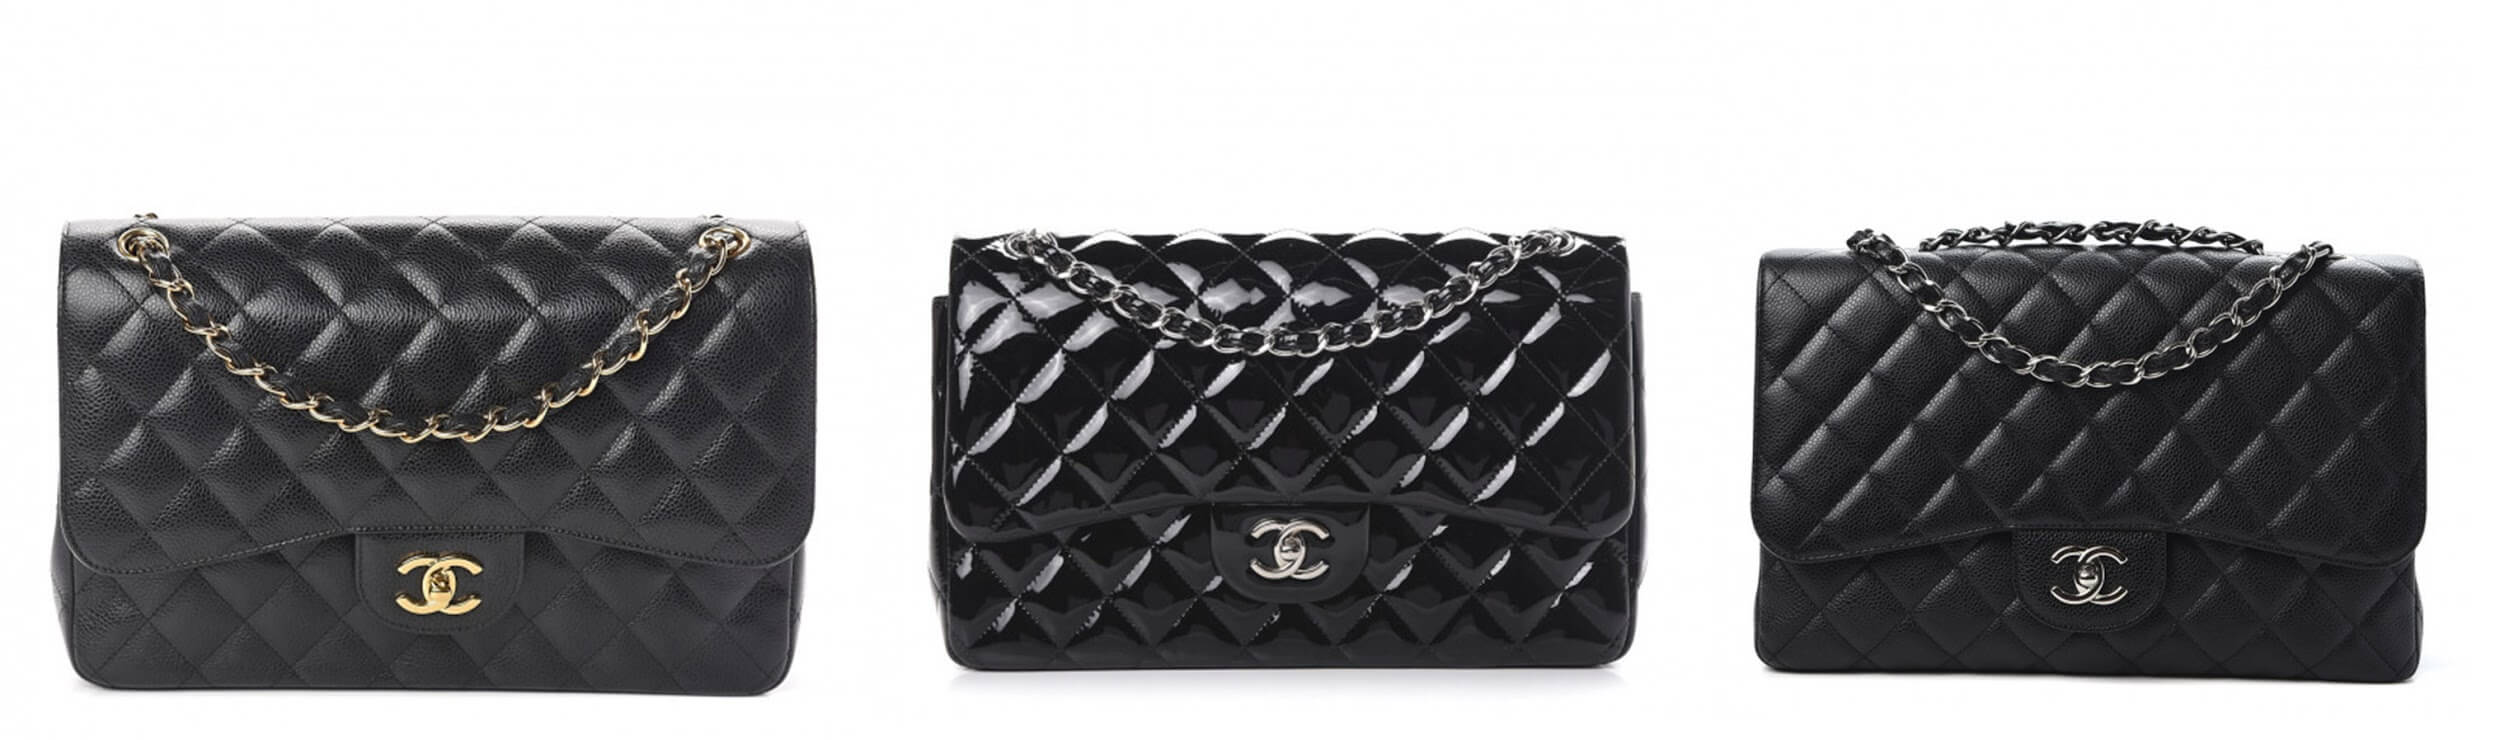 How to Restore Vintage Chanel Bag - A Vintage Splendor Shares Her Tips